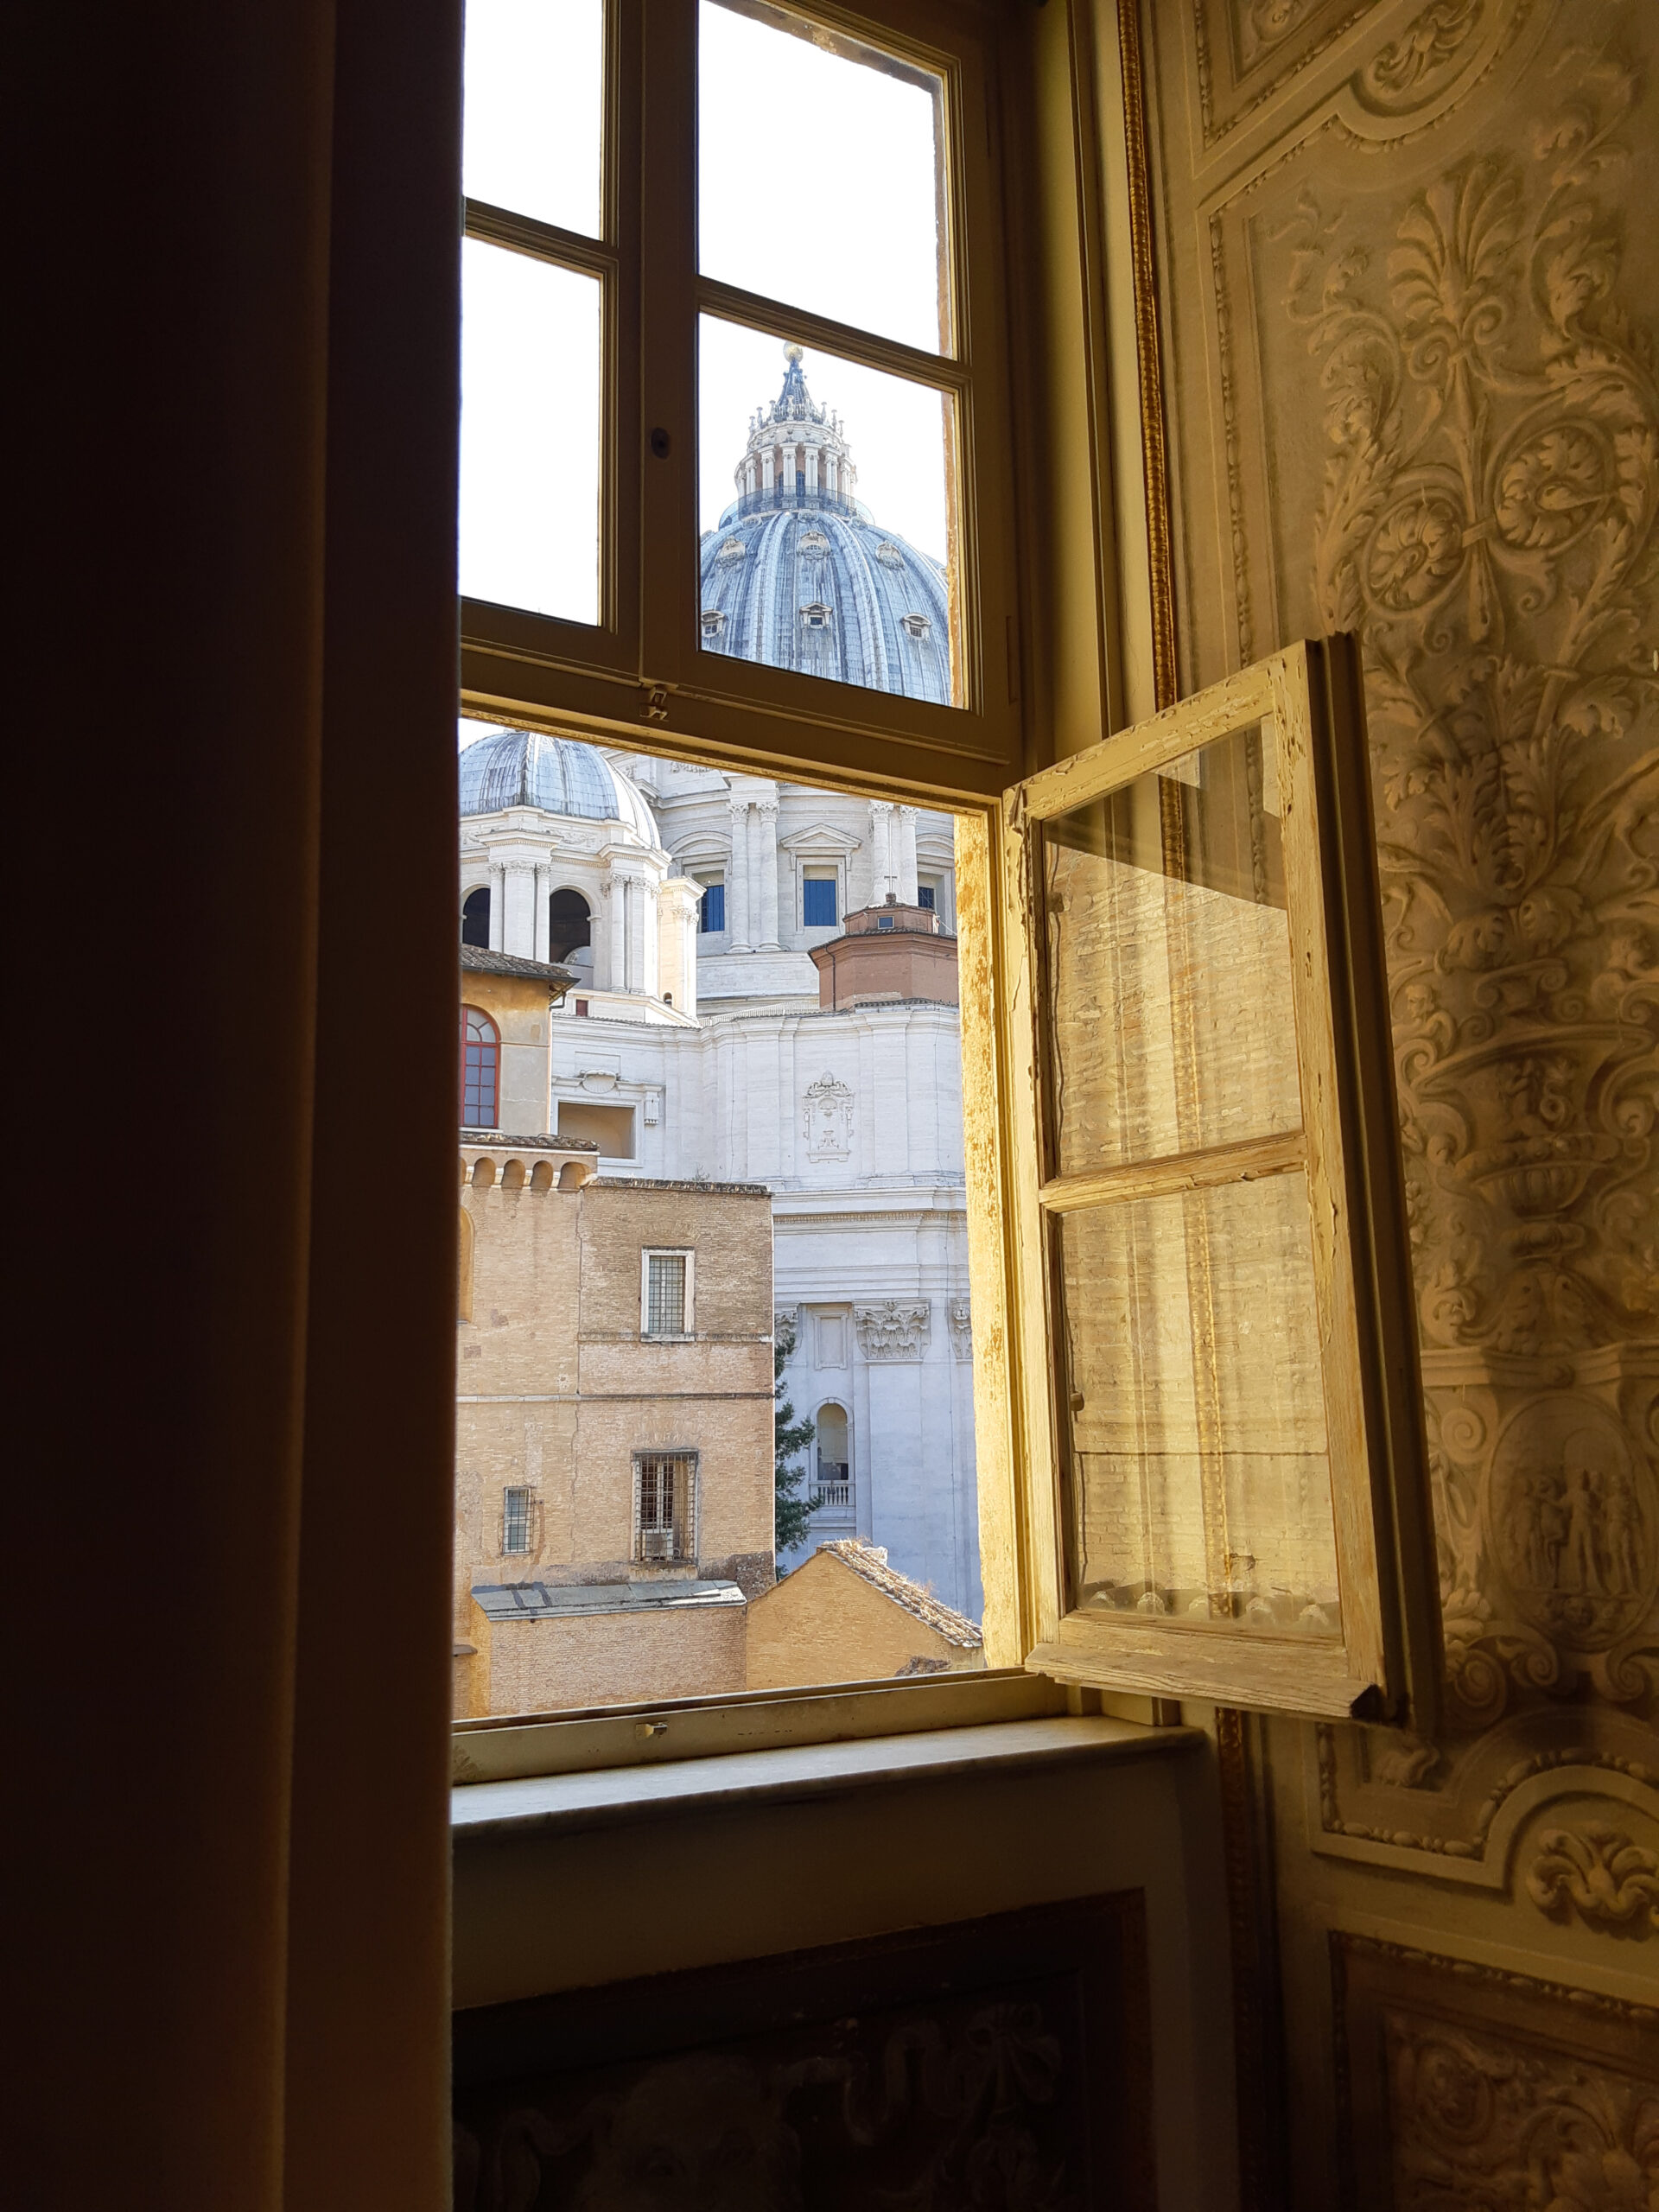 Widok przez okno na Bazylikę św. Piotra w jednej z sal w Muzeach Watykańskich